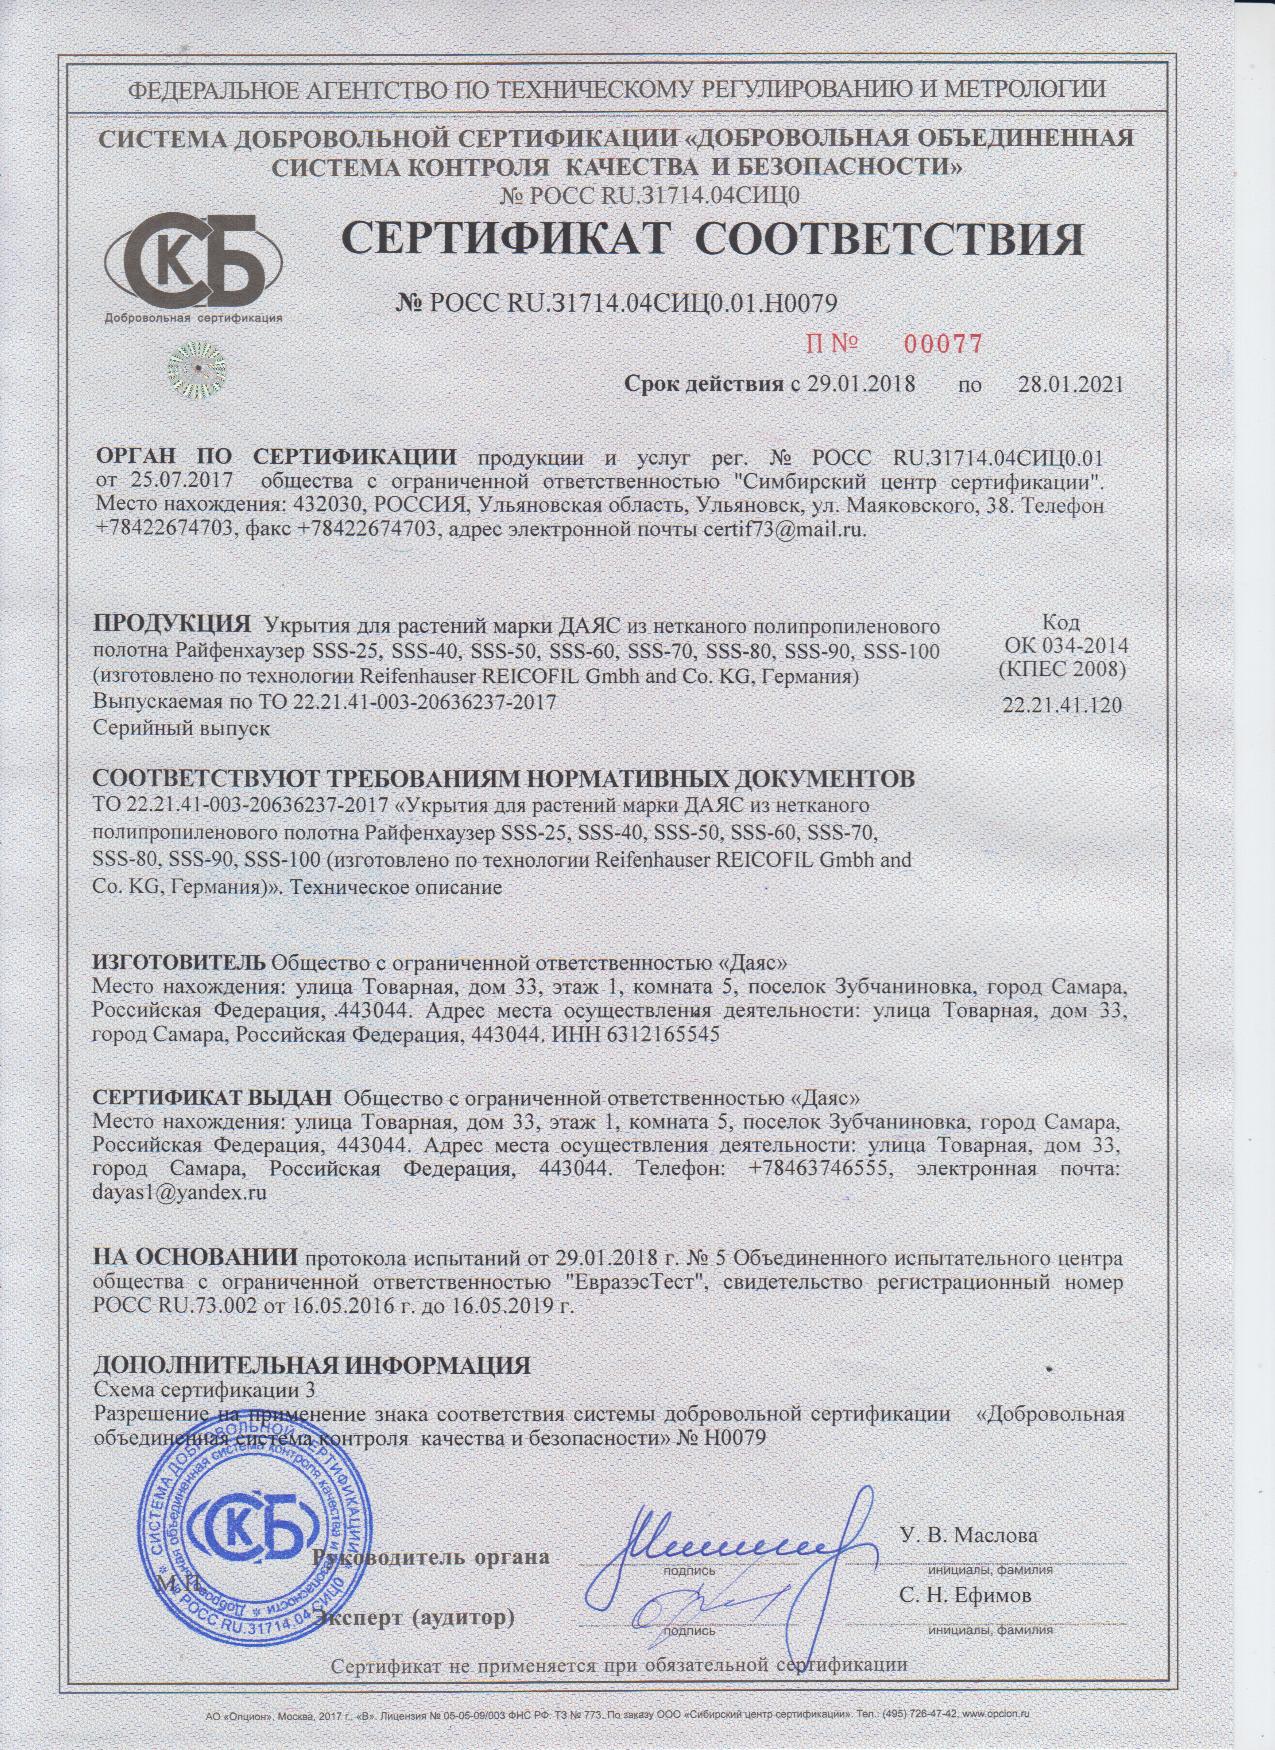 Сертификат соответствия Укрытия для растений марки Даяс